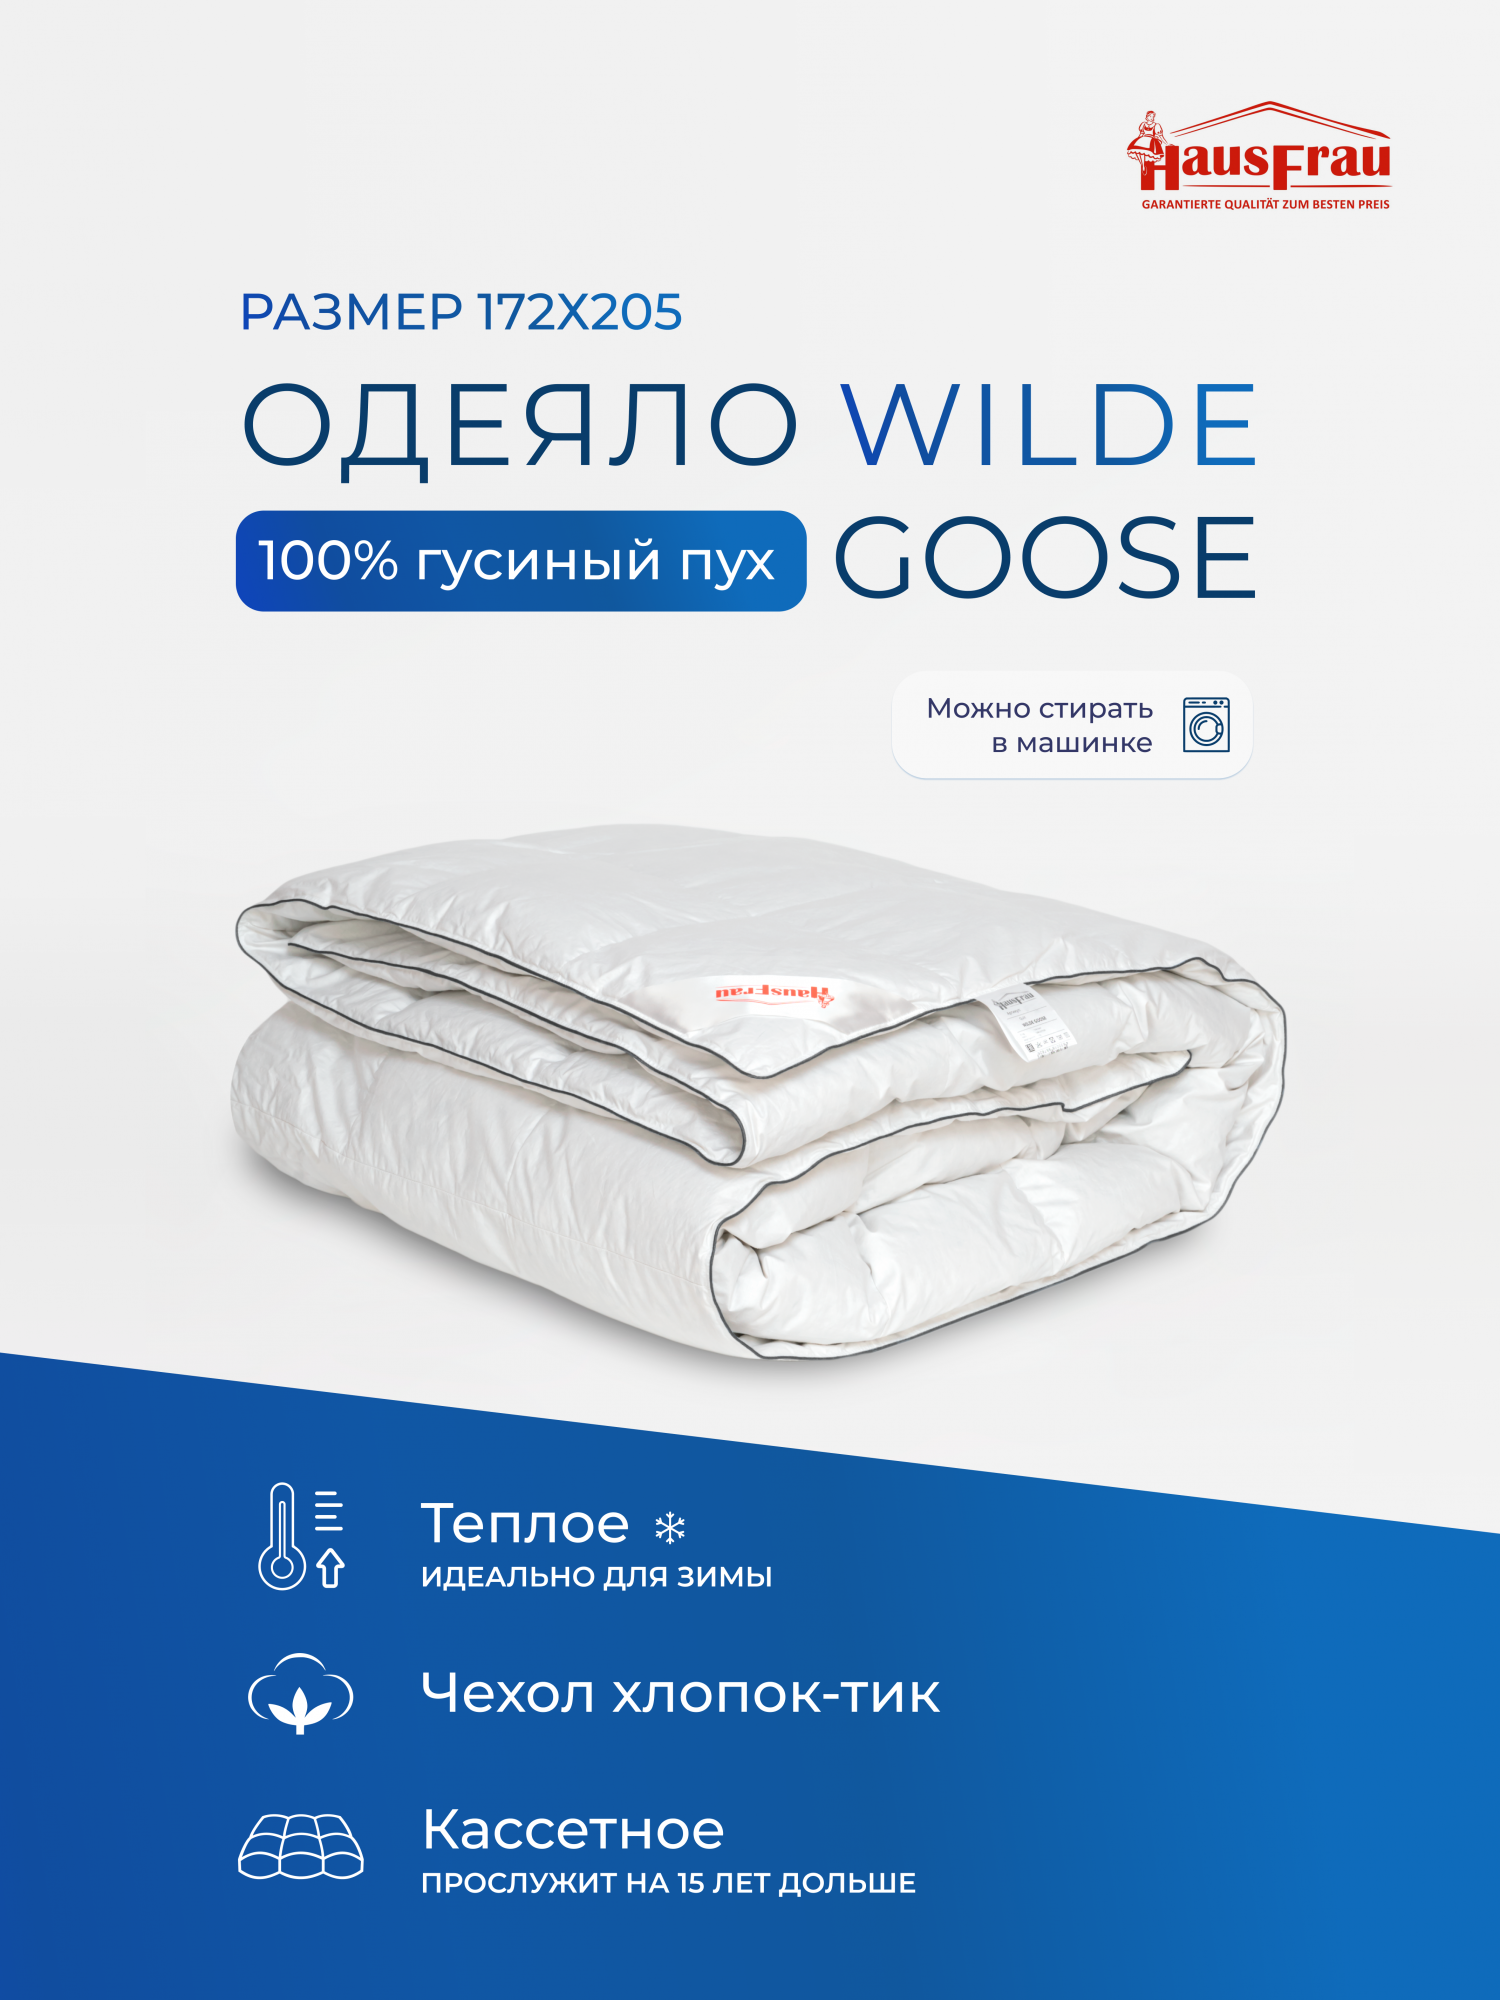 Одеяло HausFrau Wilde Goose кассетное пуховое теплое 172х205